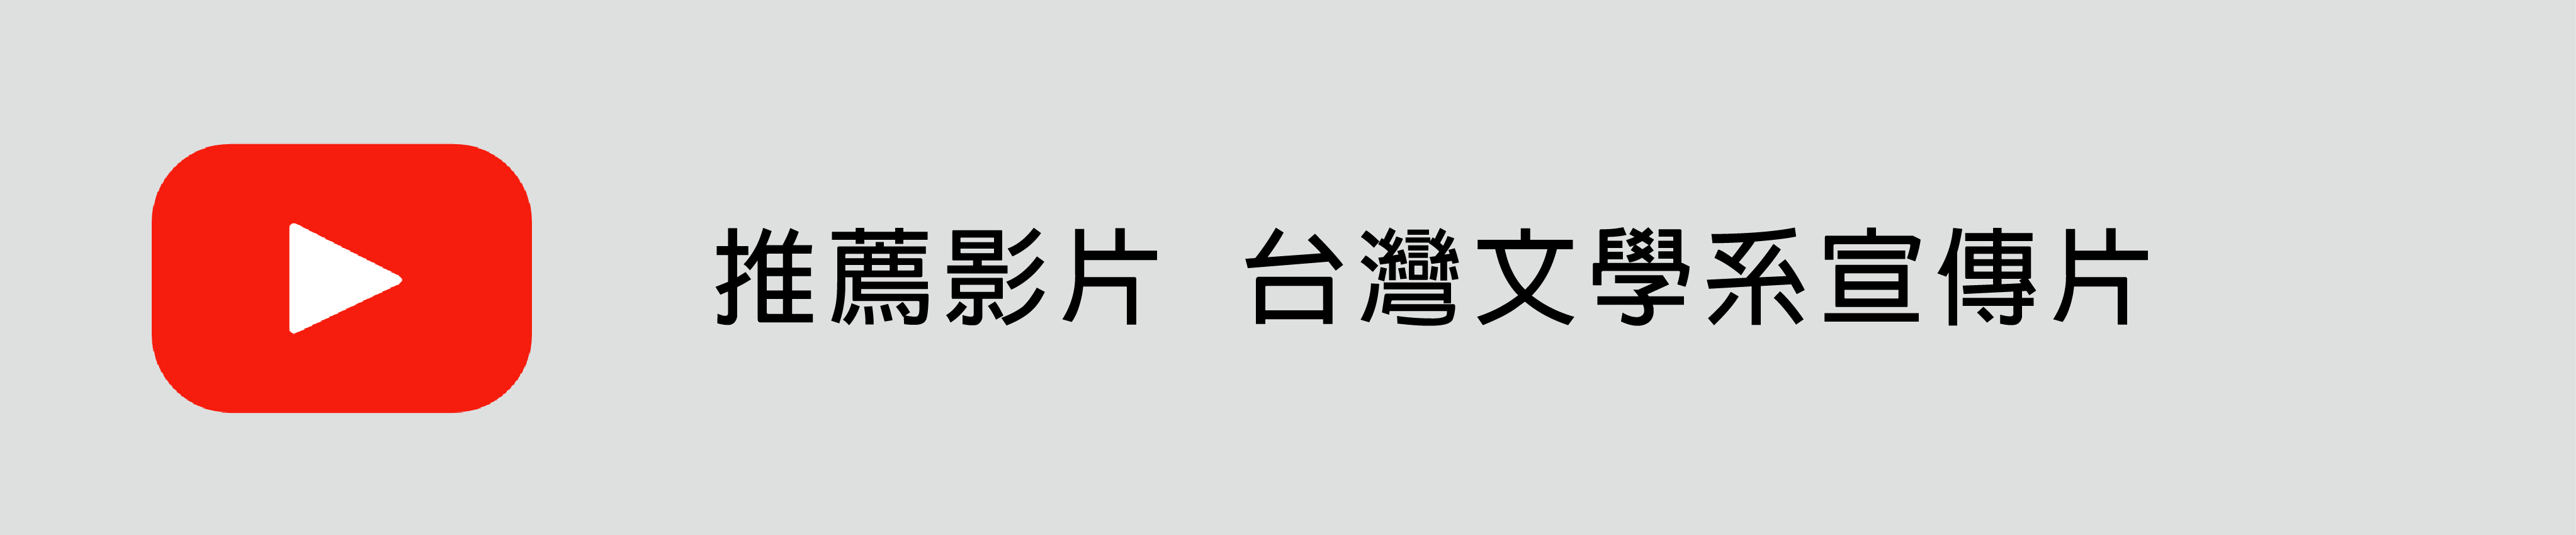 台灣文學系 Youtube(另開新視窗)